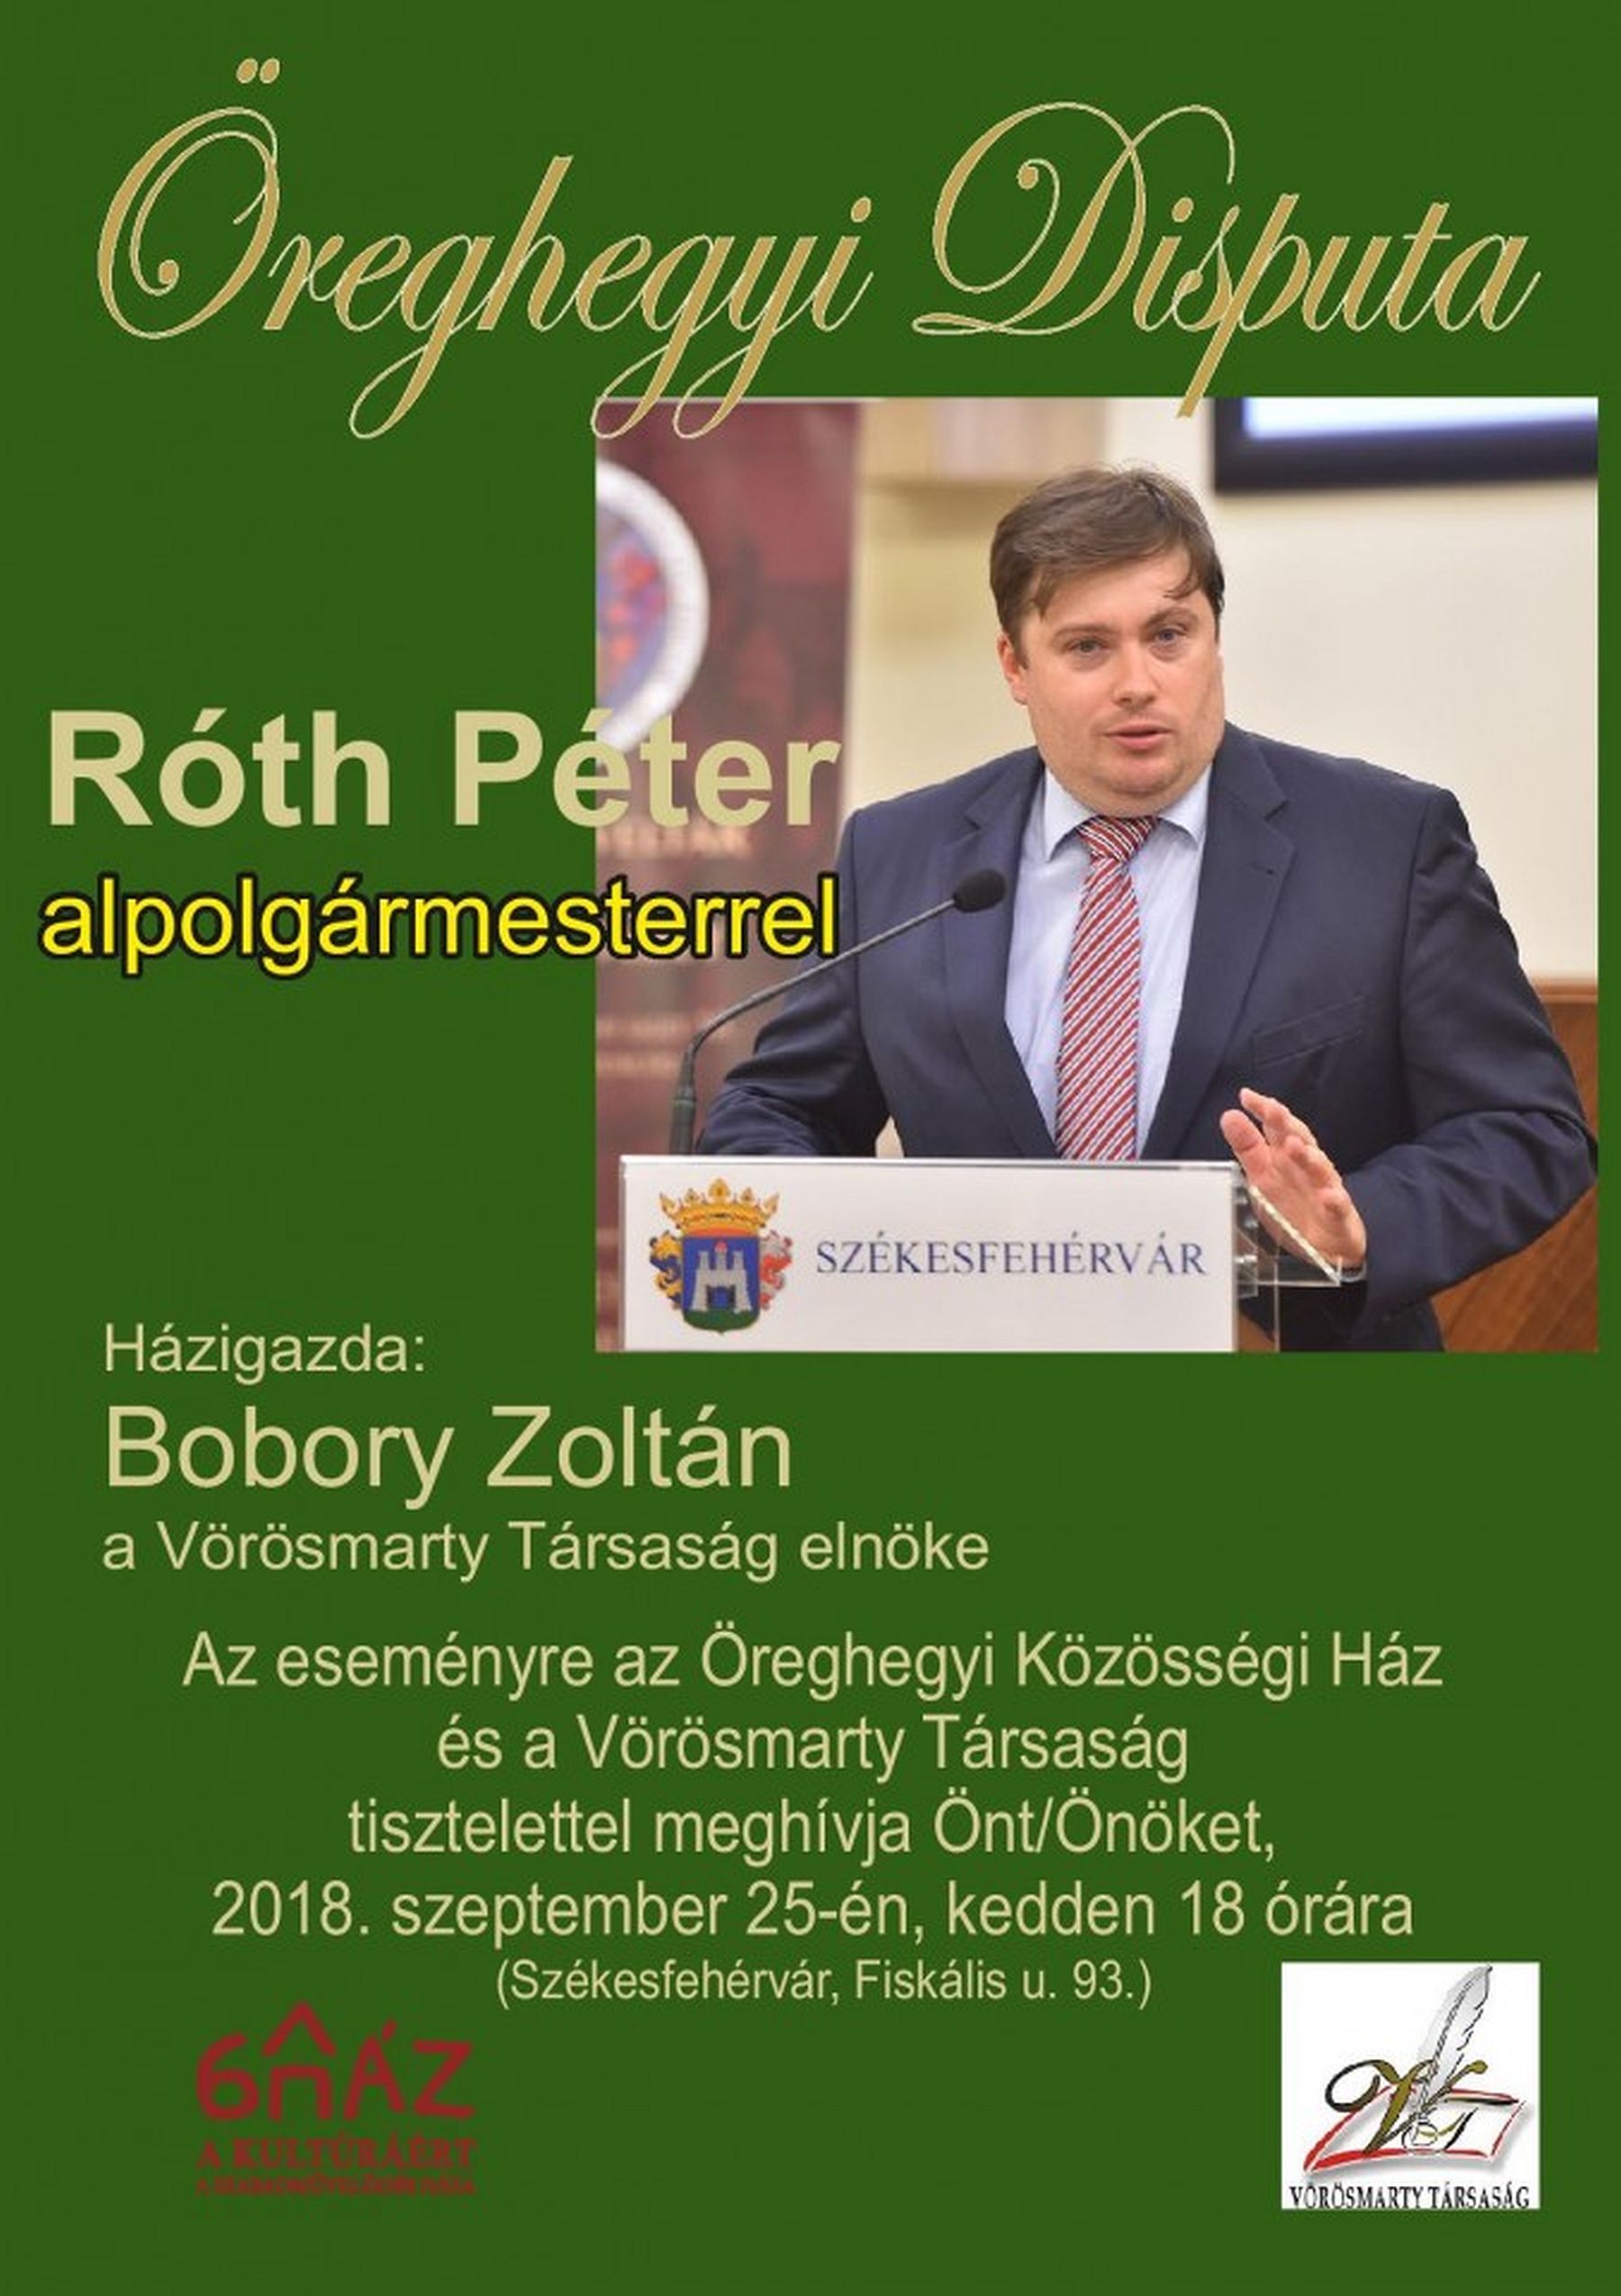 Róth Péter, Fehérvár alpolgármestere lesz a keddi Öreghegyi Disputa vendége